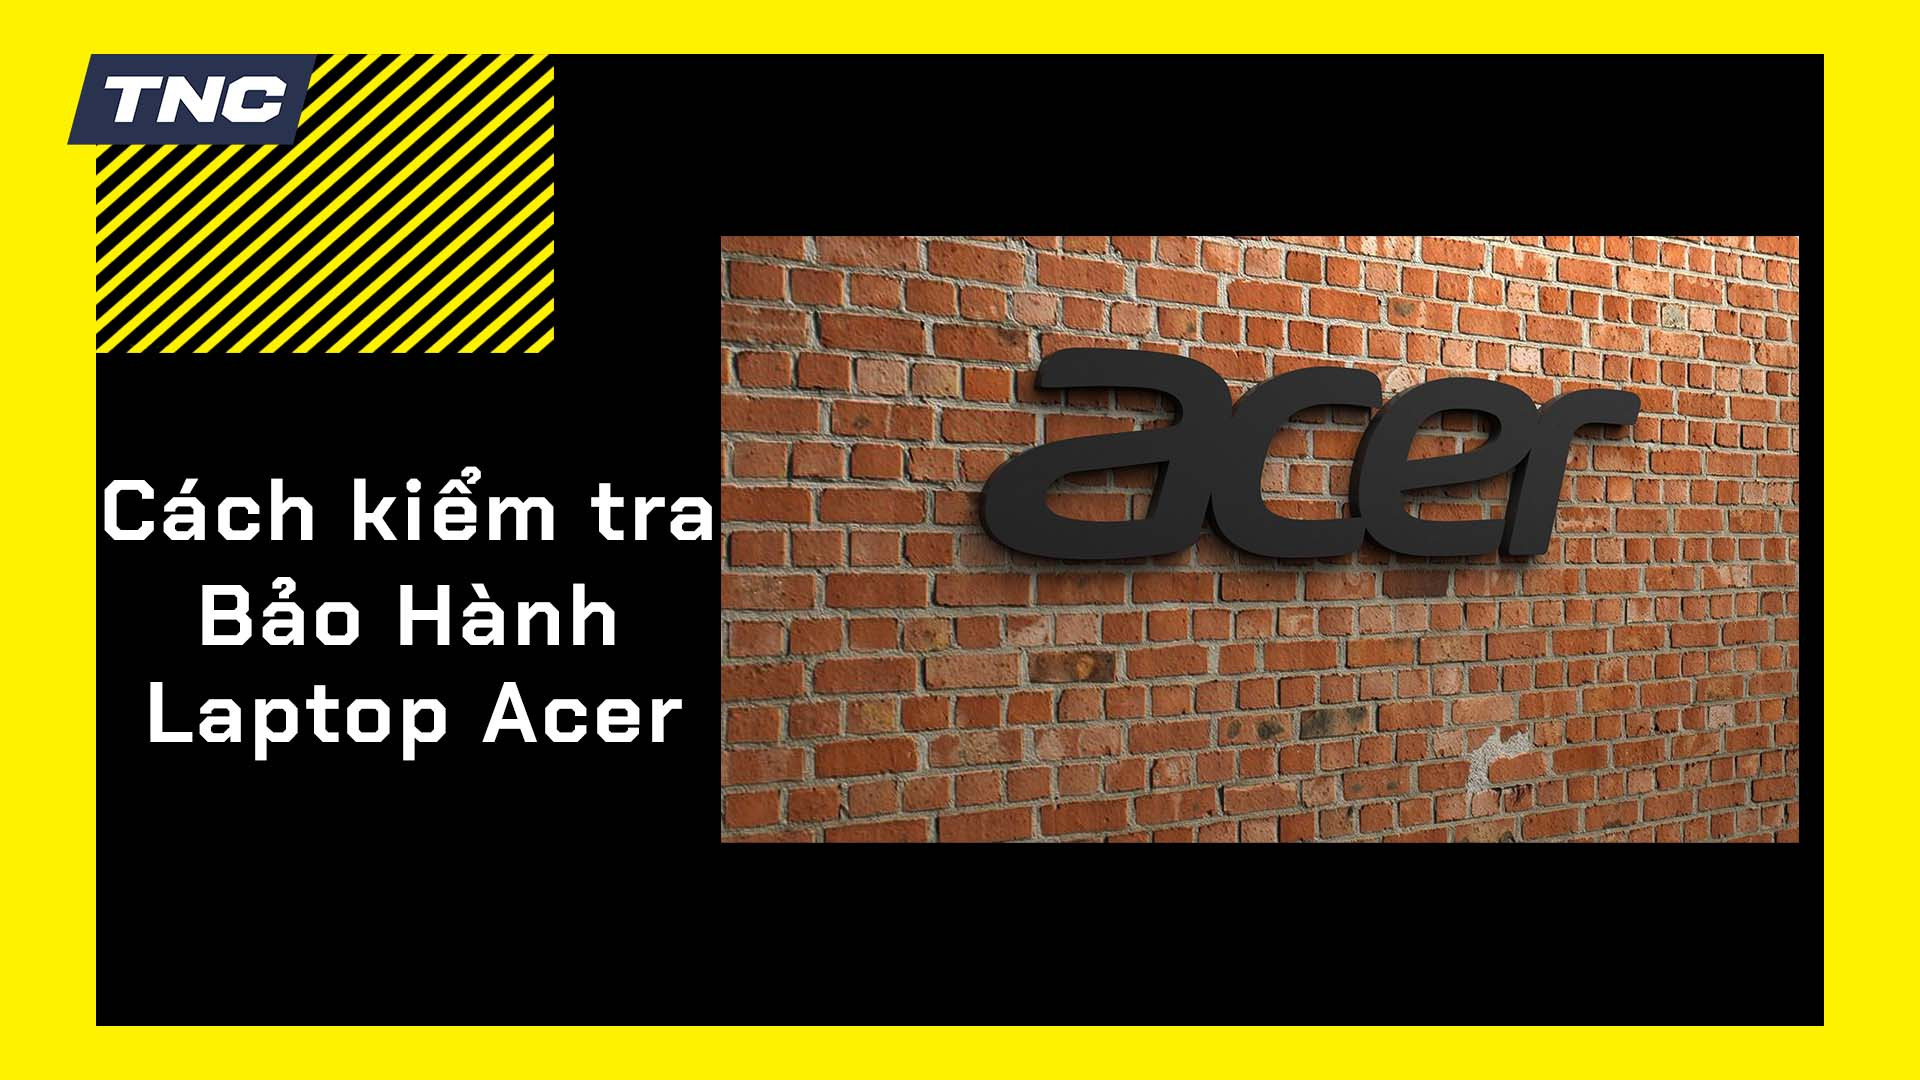 Cách kiểm tra bảo hành laptop Acer bằng IMEI, Serial Number đơn giản